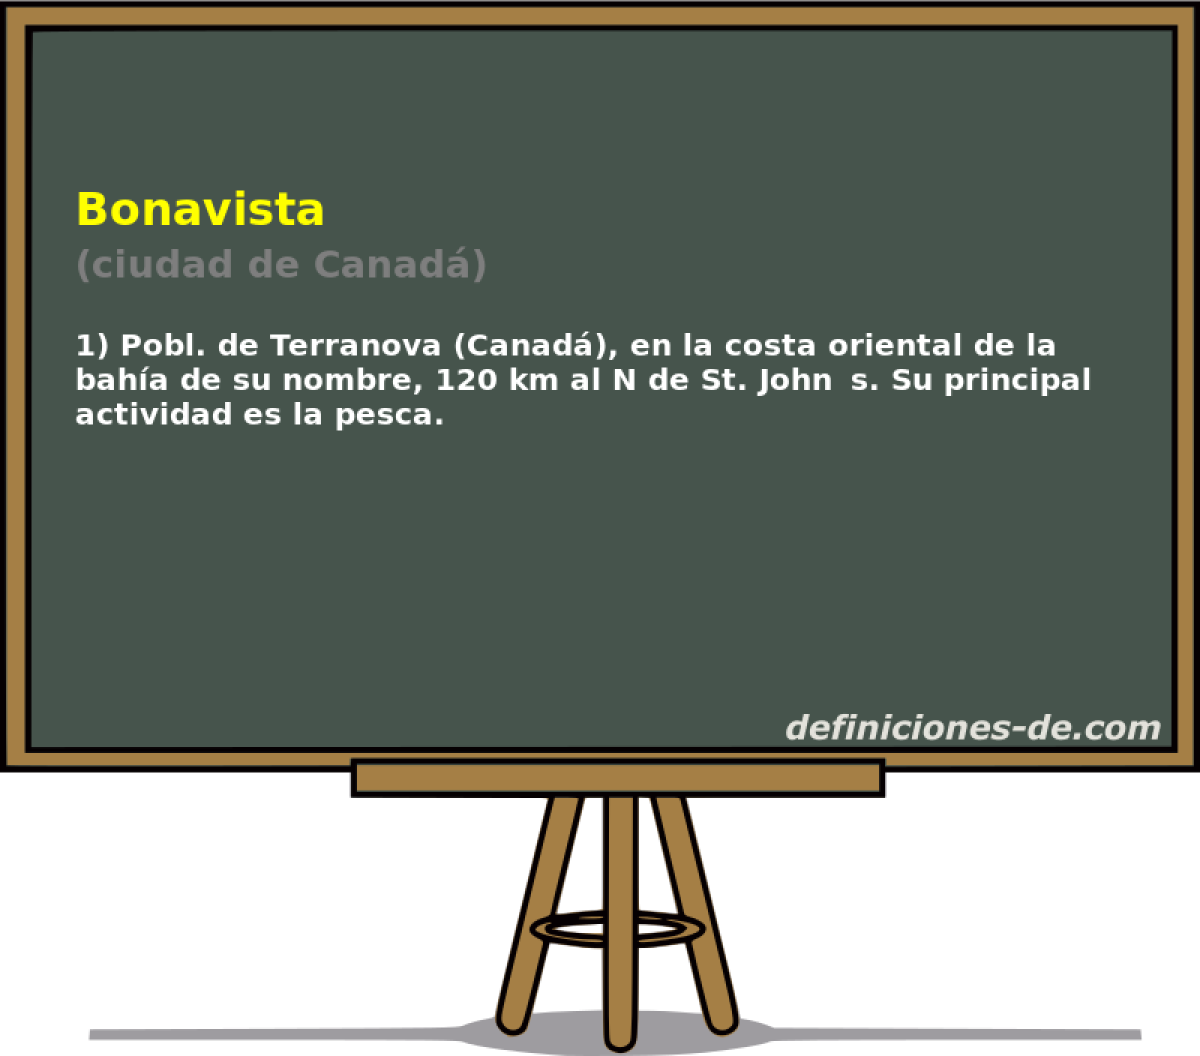 Bonavista (ciudad de Canad)